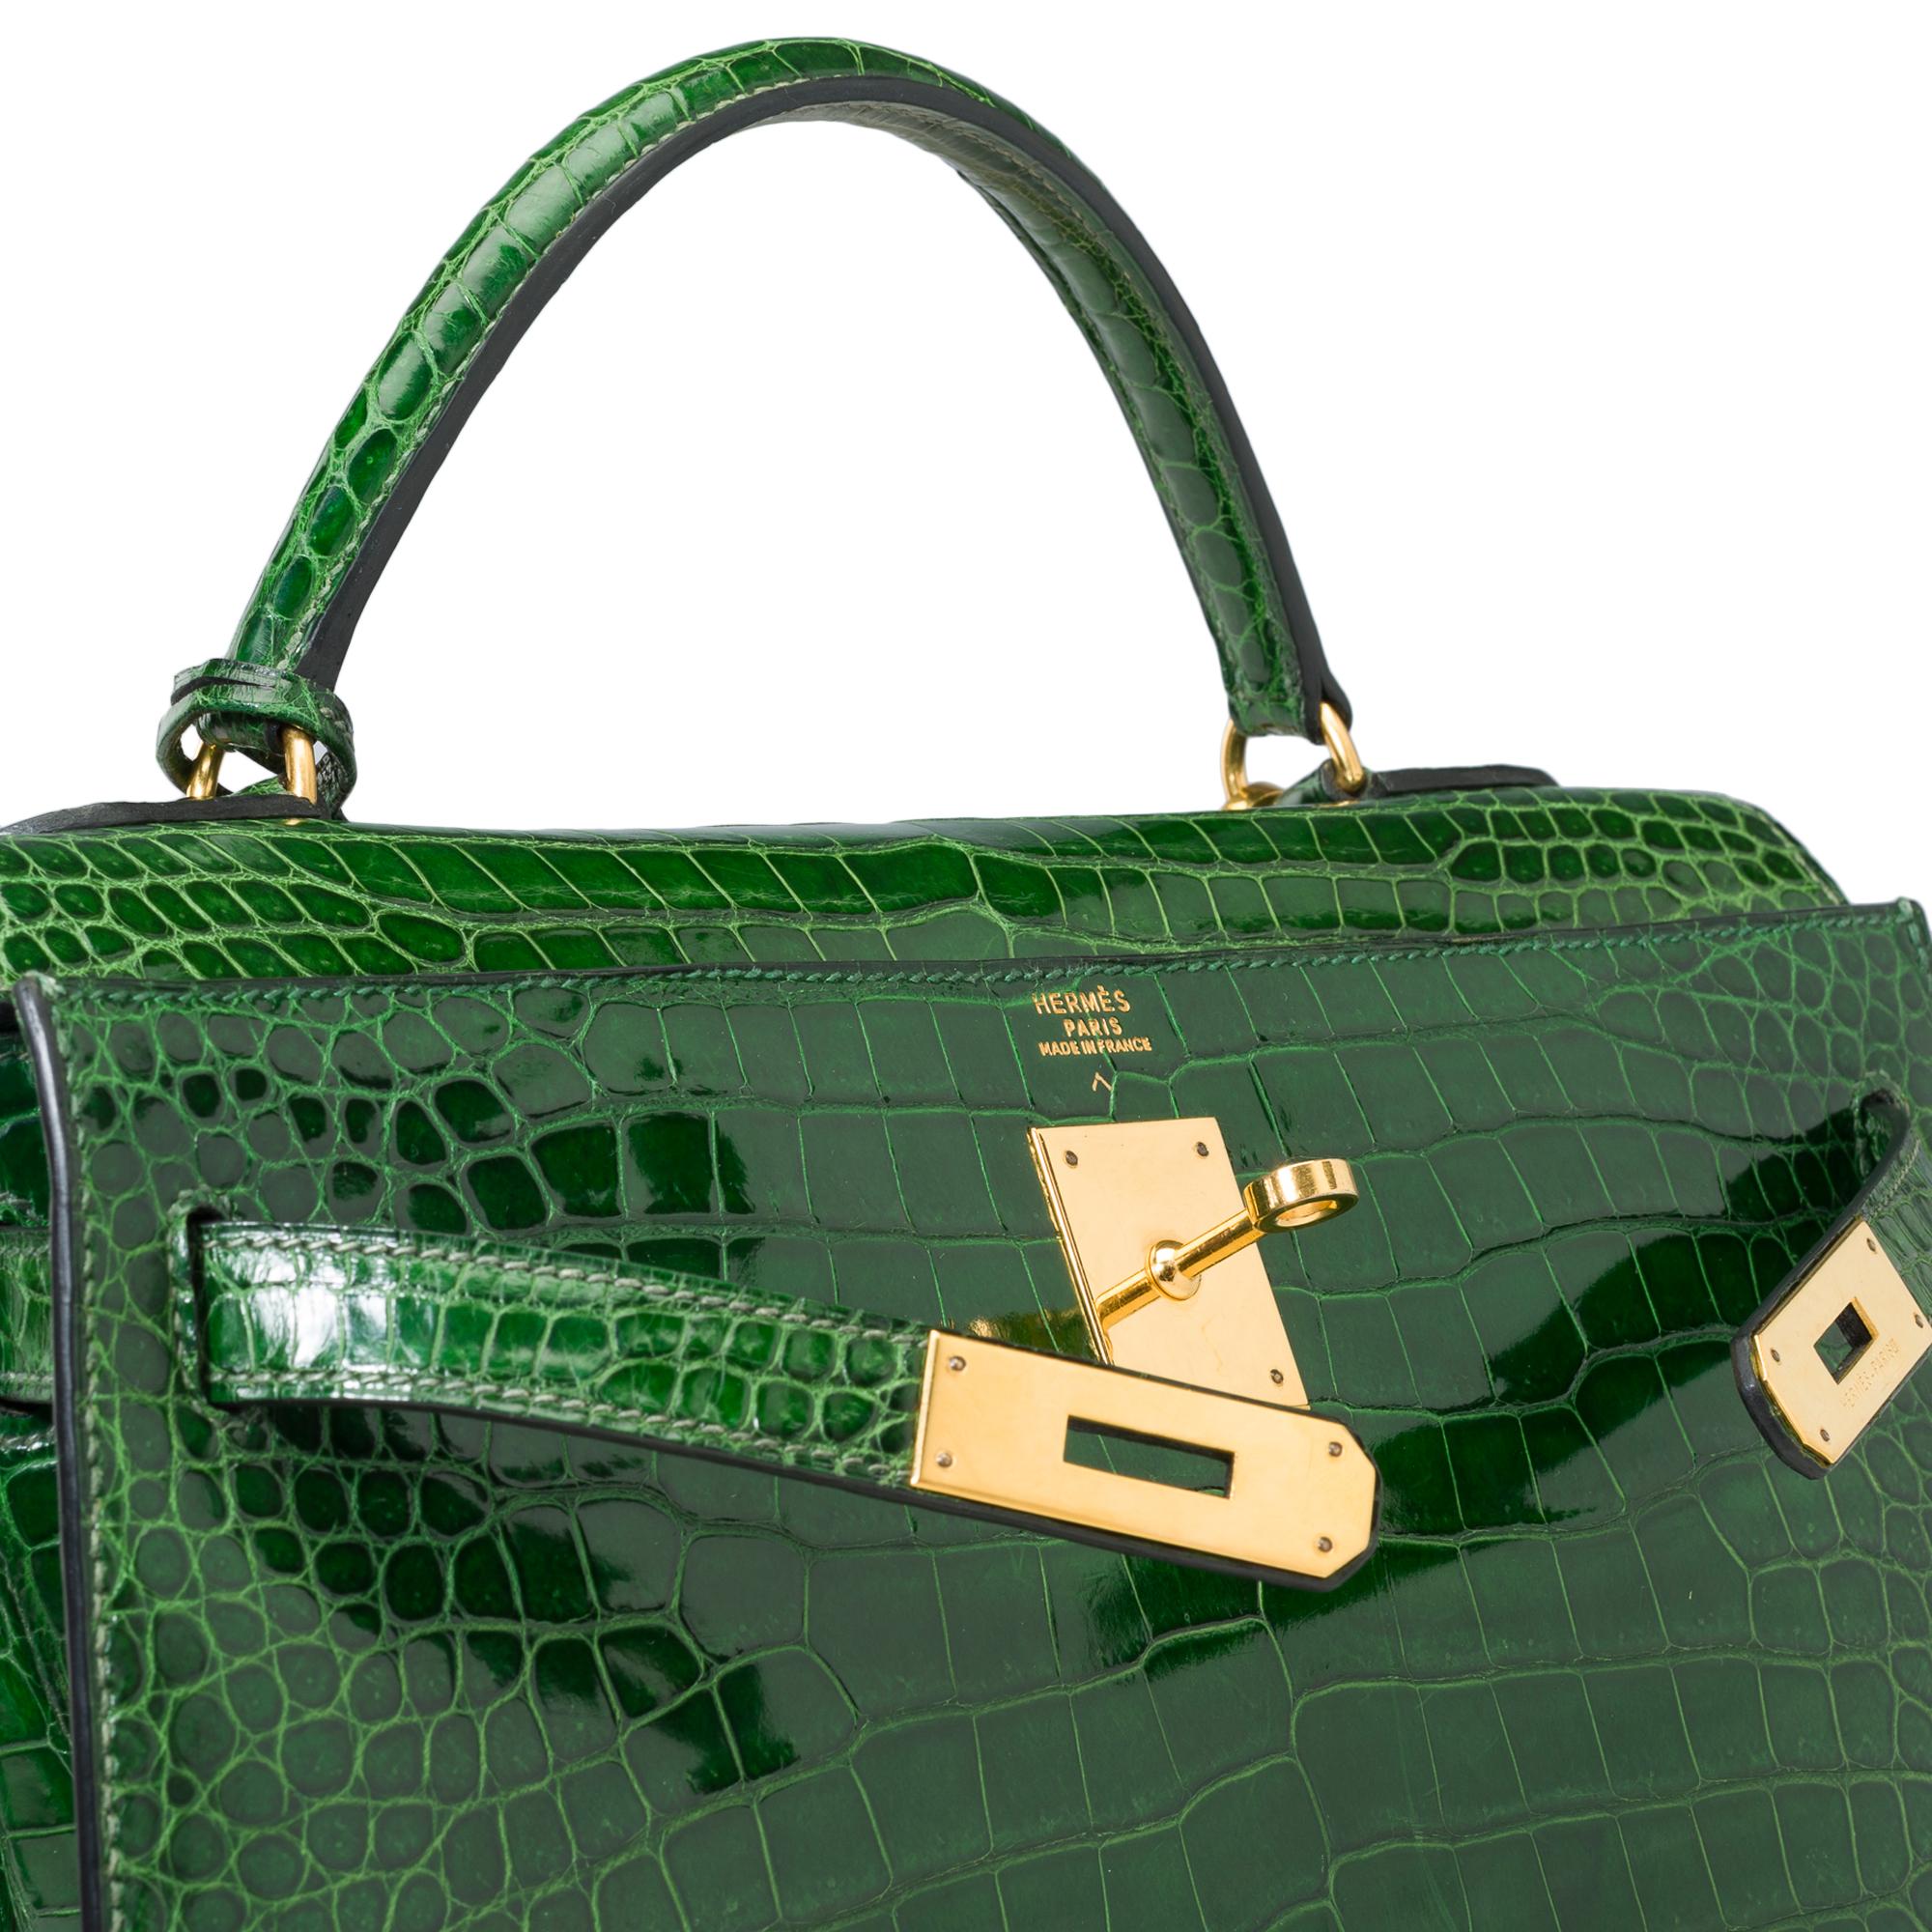 Rare Hermès Kelly 32 saddle handbag strap in Green Emerald Crocodilylus , GHW 2